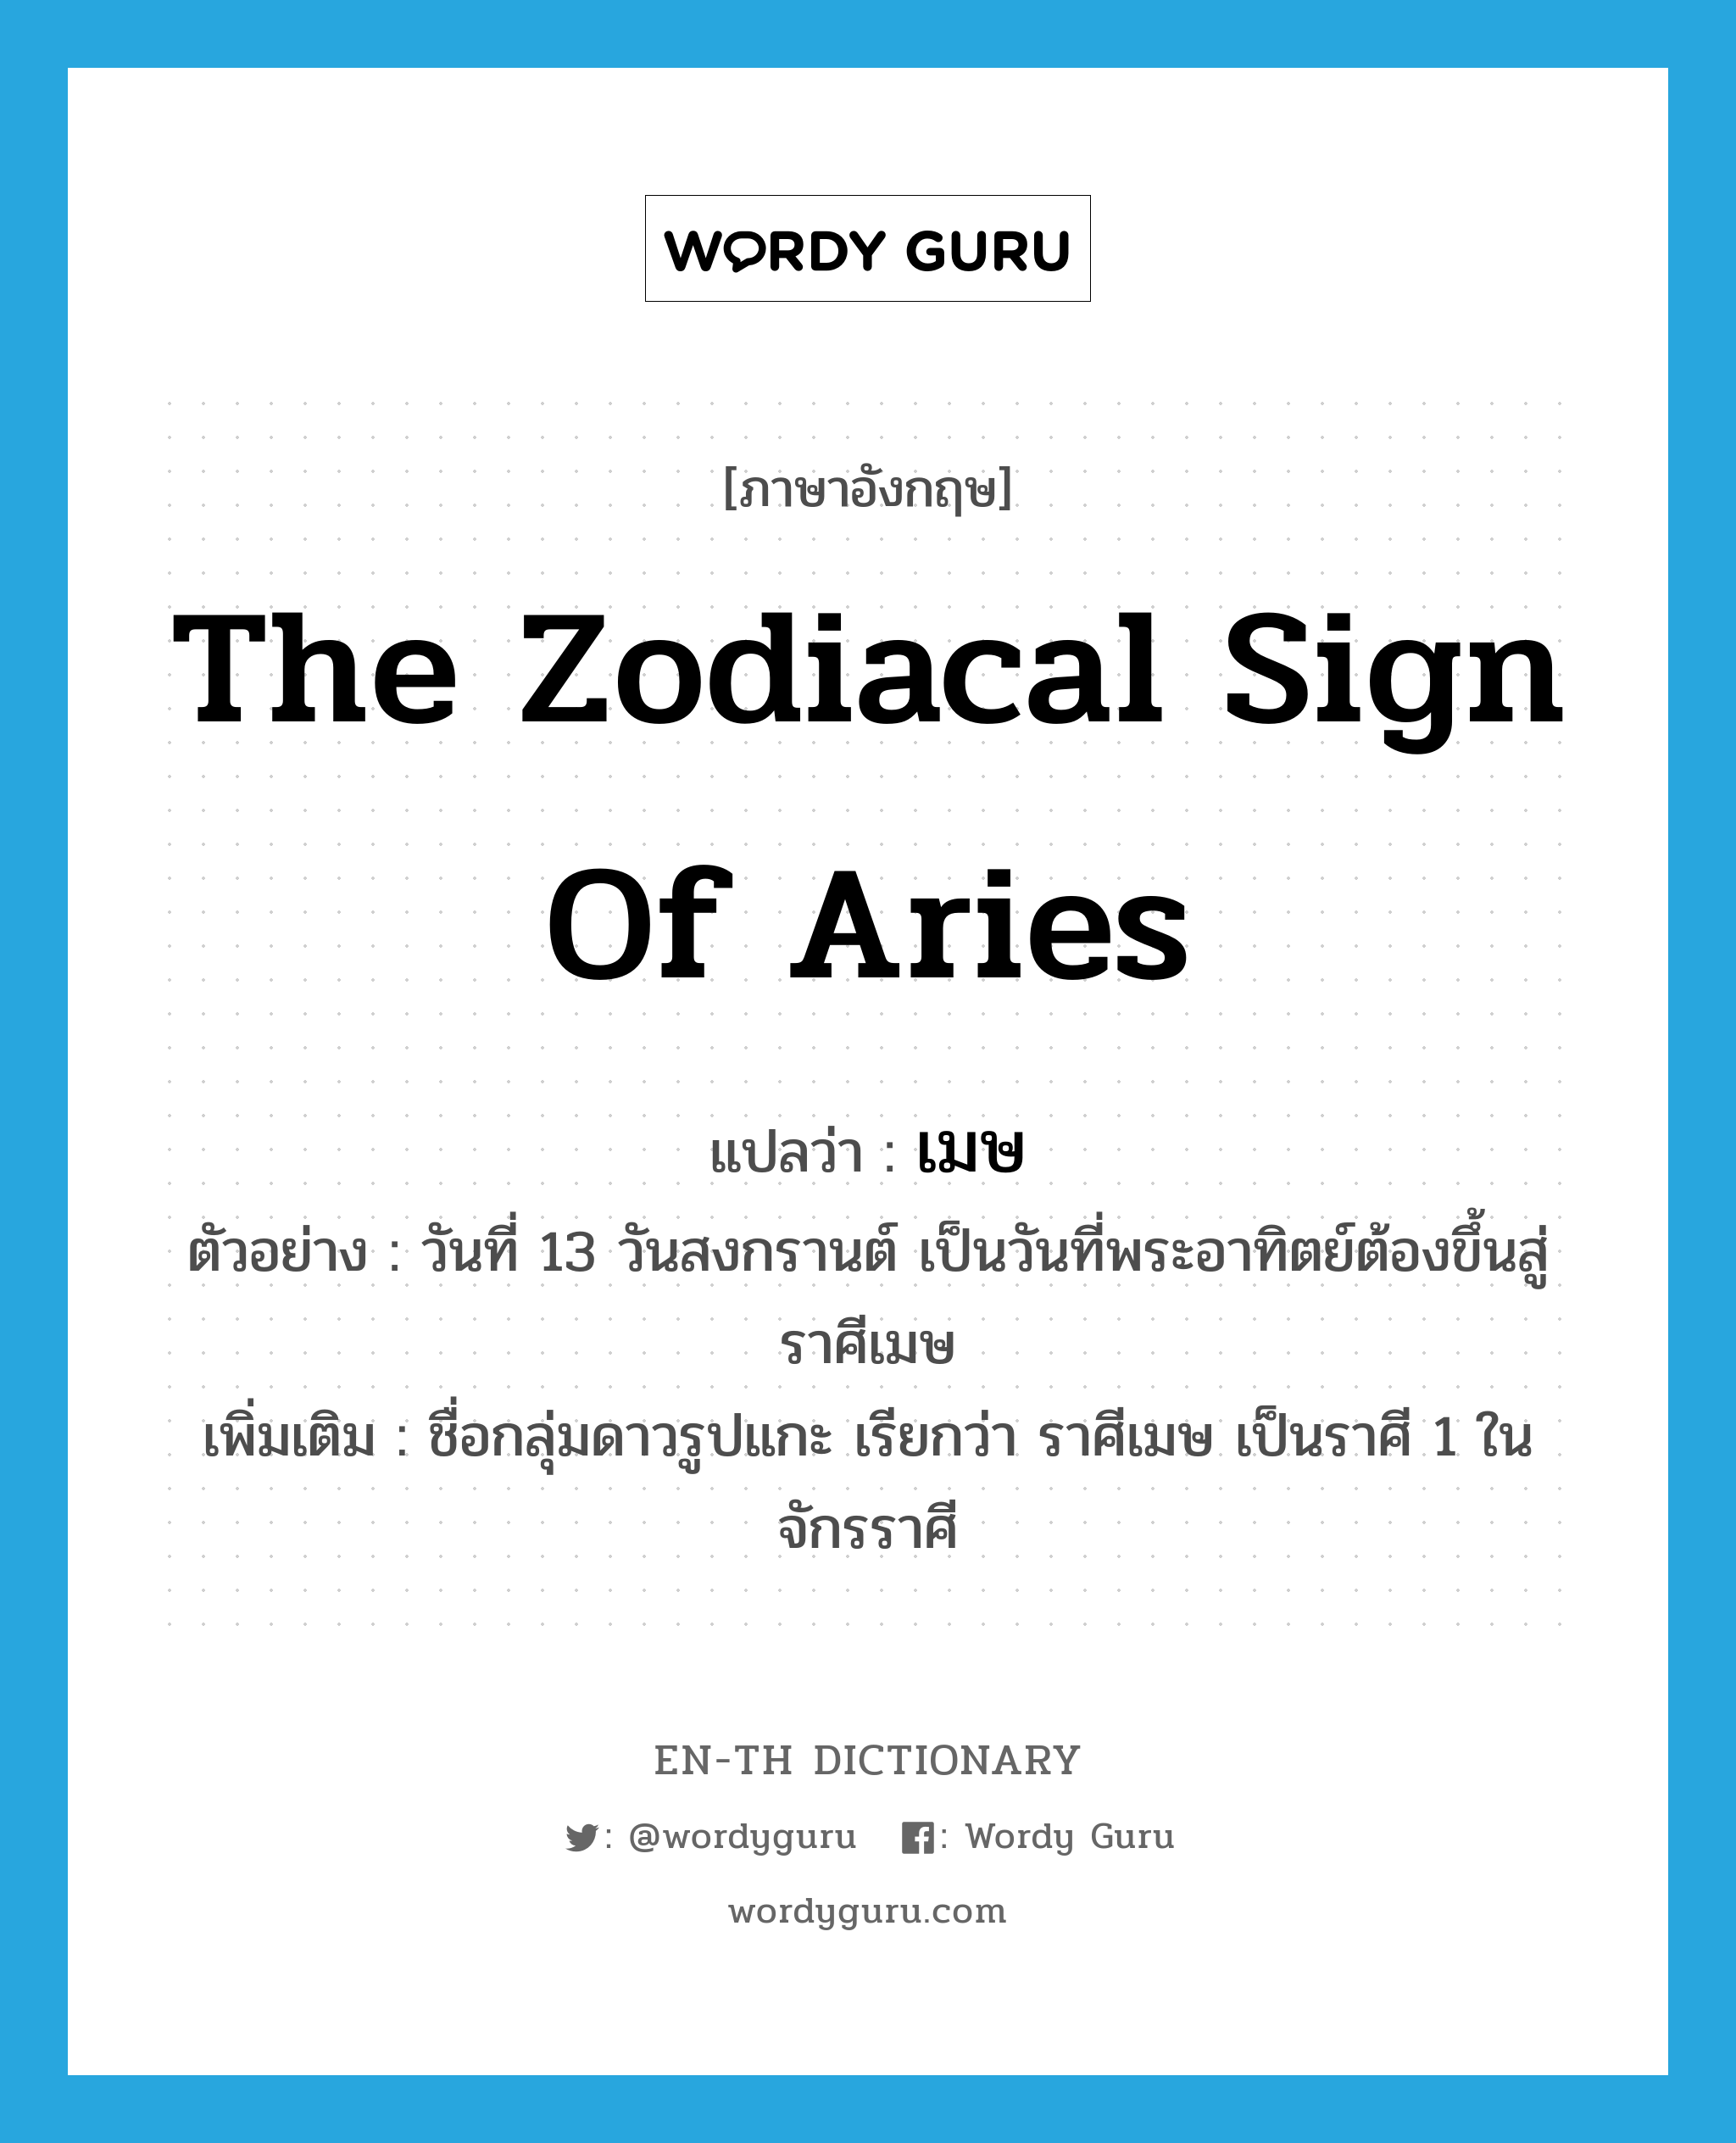 the zodiacal sign of Aries แปลว่า?, คำศัพท์ภาษาอังกฤษ the zodiacal sign of Aries แปลว่า เมษ ประเภท N ตัวอย่าง วันที่ 13 วันสงกรานต์ เป็นวันที่พระอาทิตย์ต้องขึ้นสู่ราศีเมษ เพิ่มเติม ชื่อกลุ่มดาวรูปแกะ เรียกว่า ราศีเมษ เป็นราศี 1 ในจักรราศี หมวด N